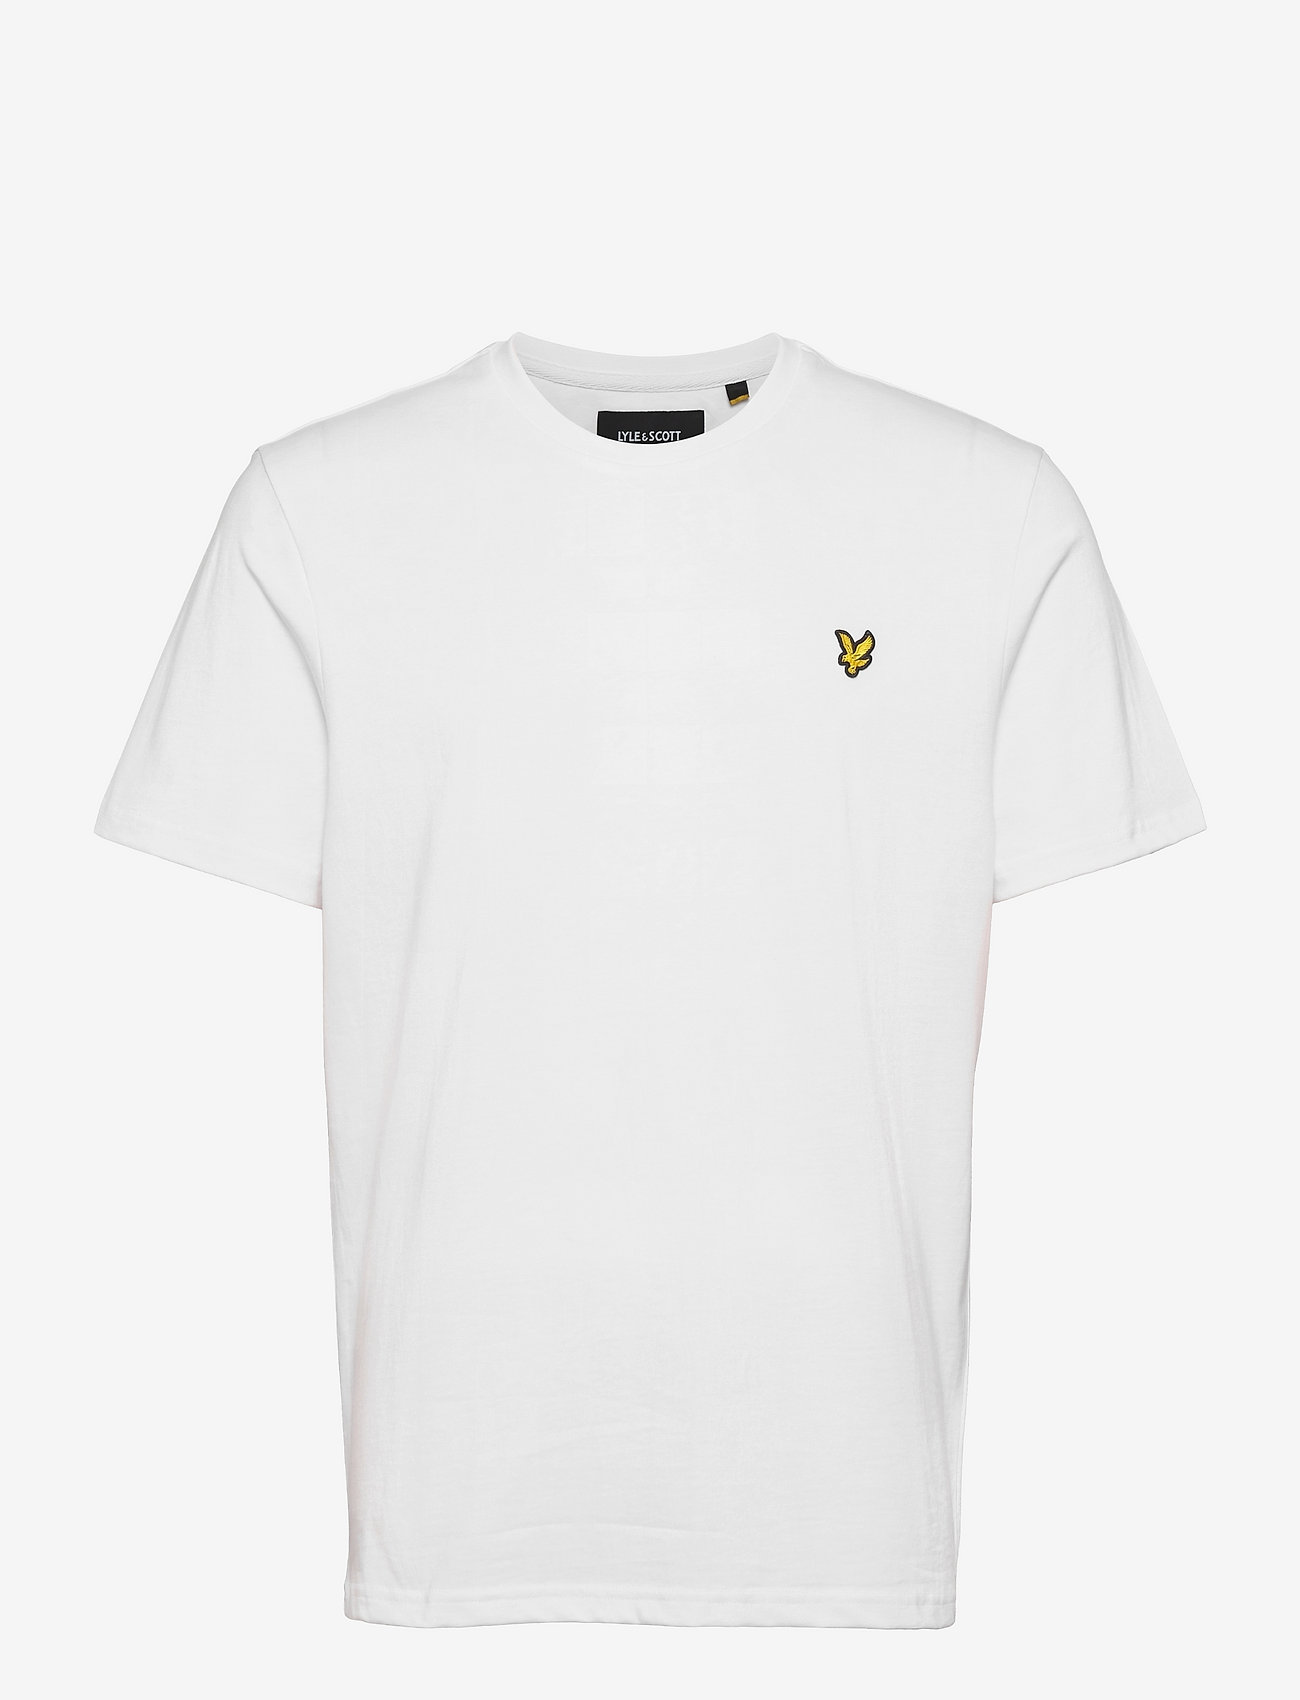 Lyle & Scott - Plain T-Shirt - lühikeste varrukatega t-särgid - white - 1